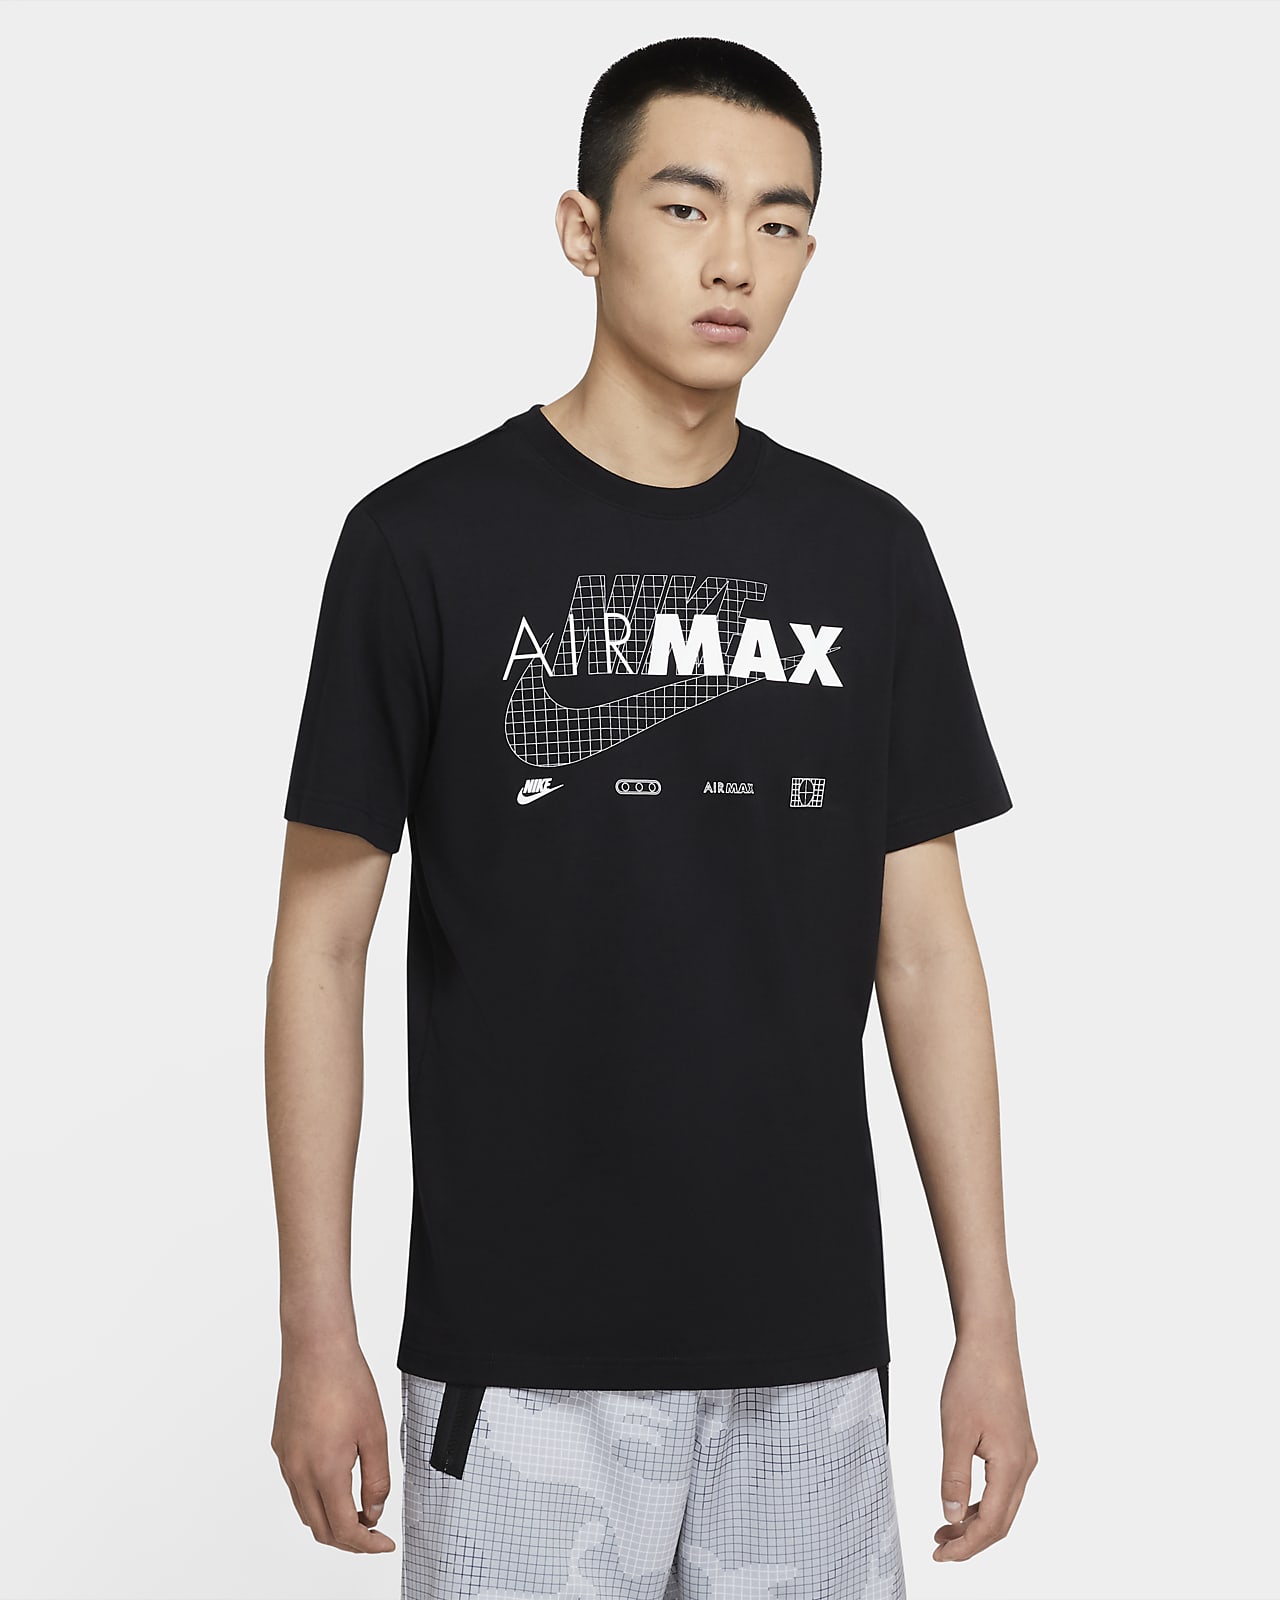 shirts that match air max 27